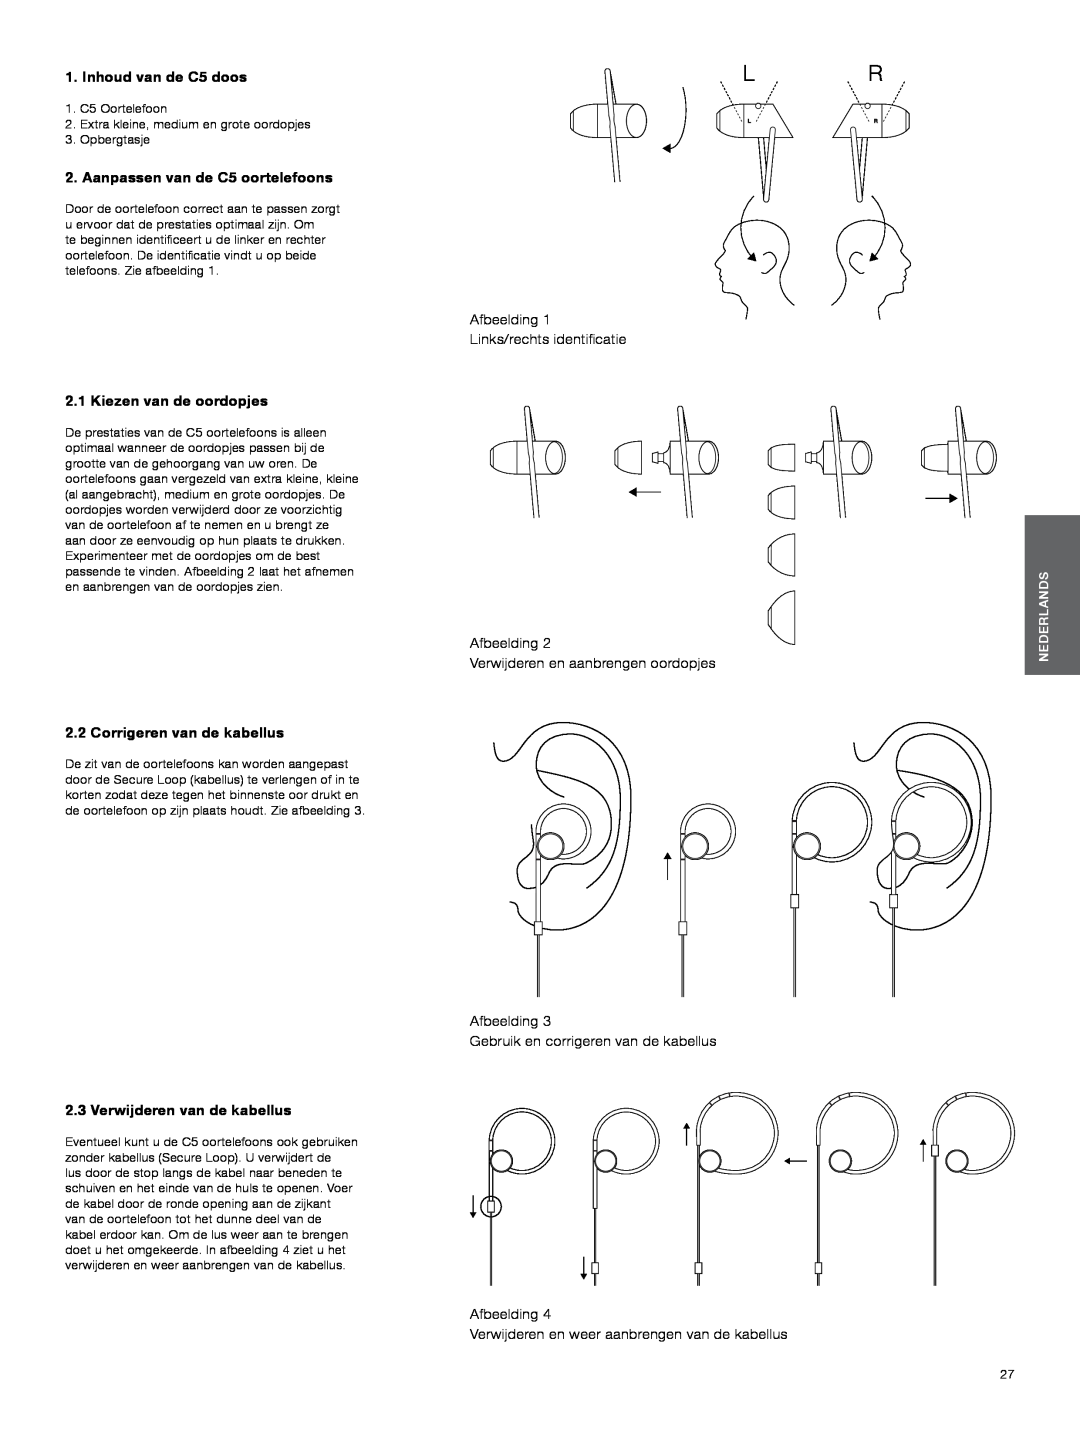 Bowers & Wilkins manual Inhoud van de C5 doos, Aanpassen van de C5 oortelefoons, Afbeelding Links/rechts identificatie 